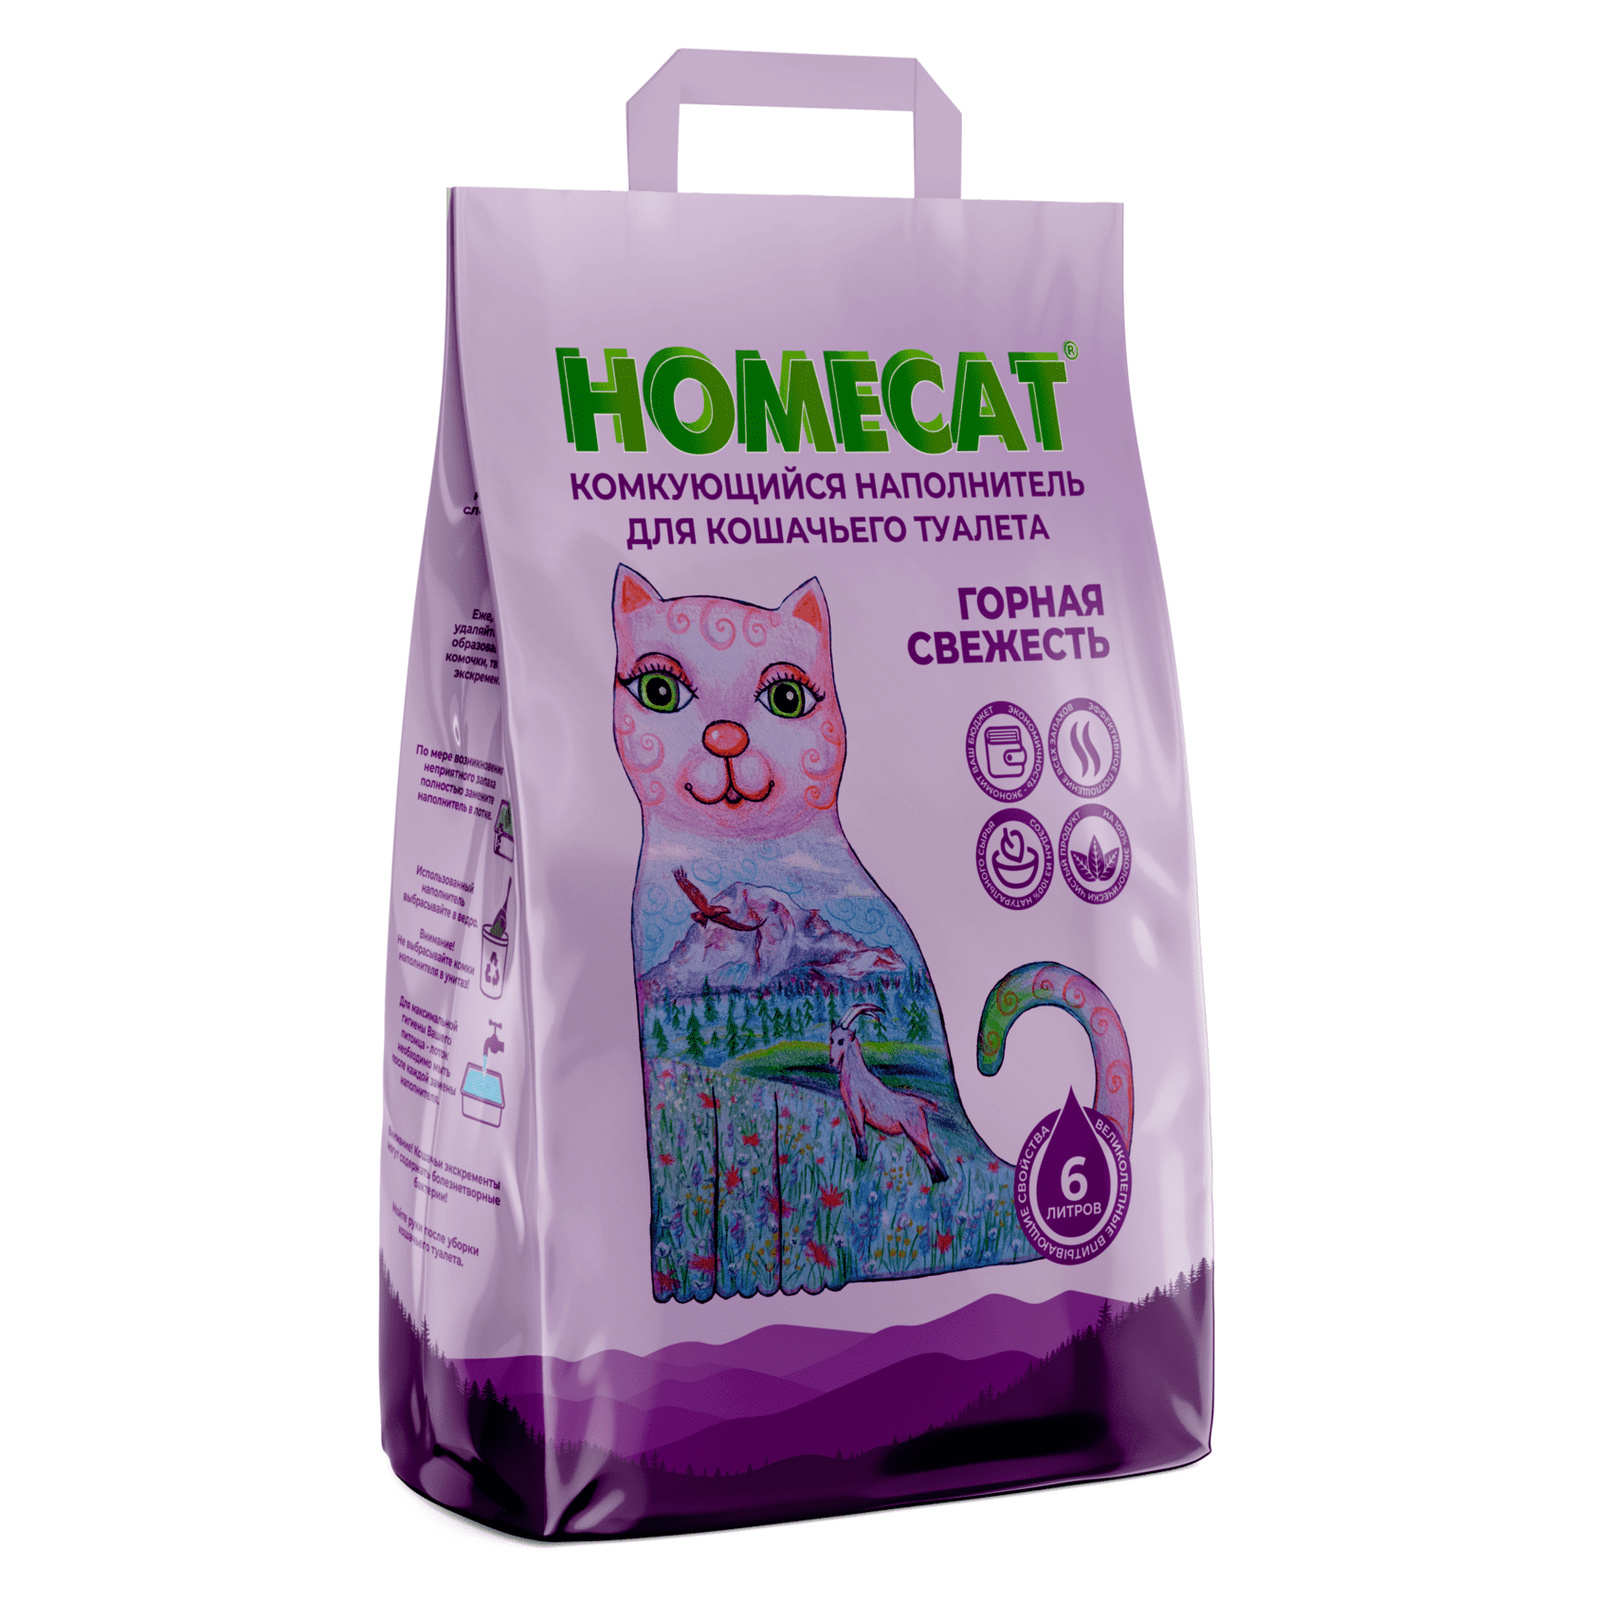 Homecat наполнитель комкующийся наполнитель (10 кг)